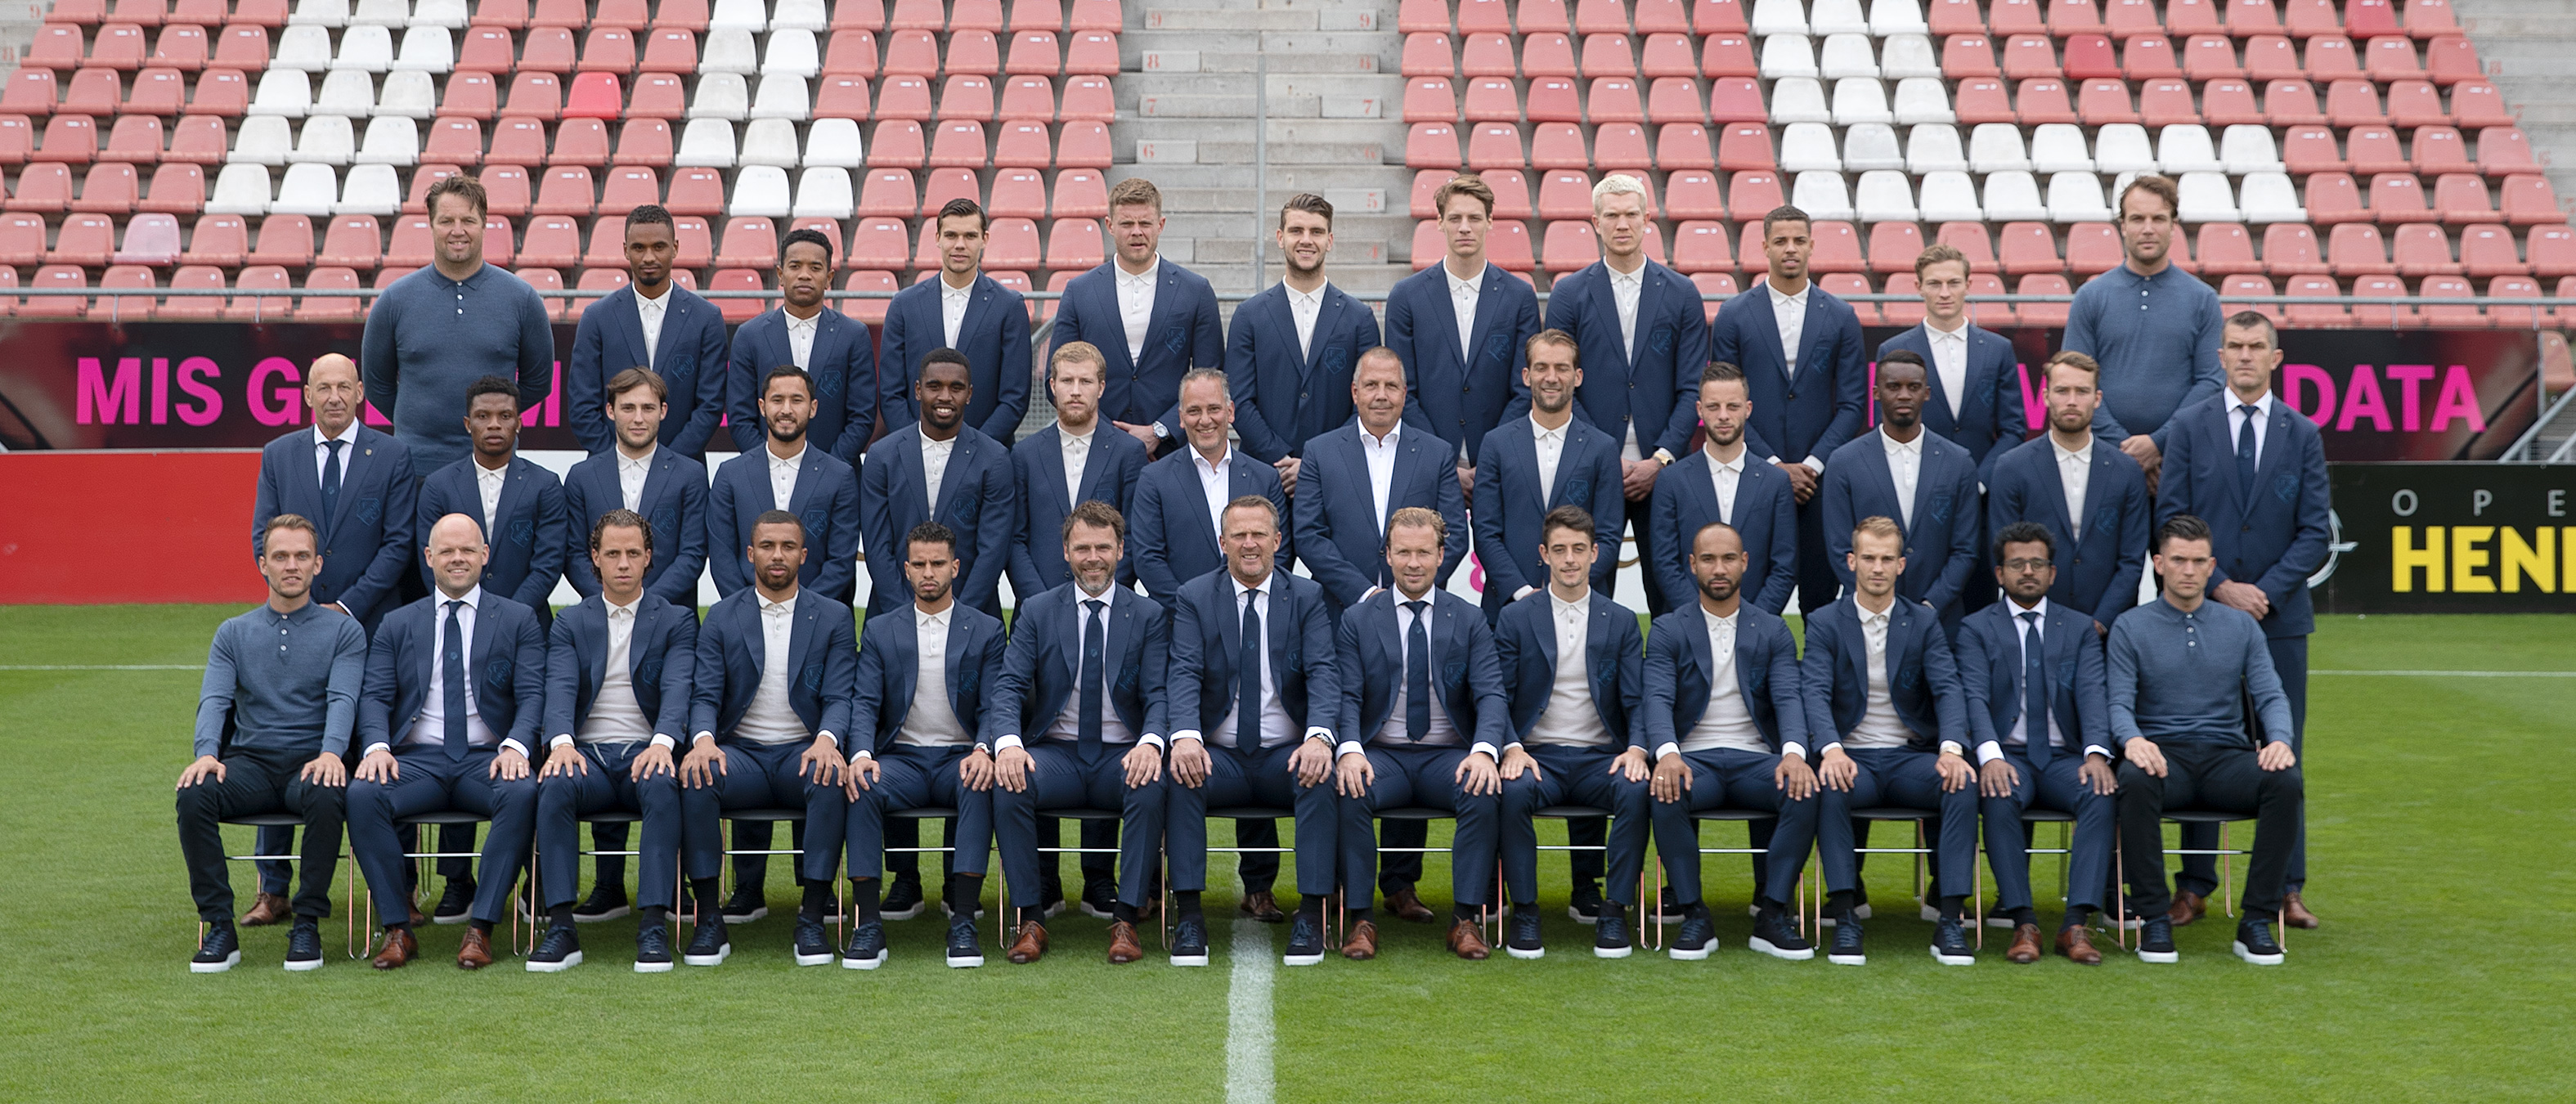 Prijswinnaars Only for Men op de foto met selectie FC Utrecht